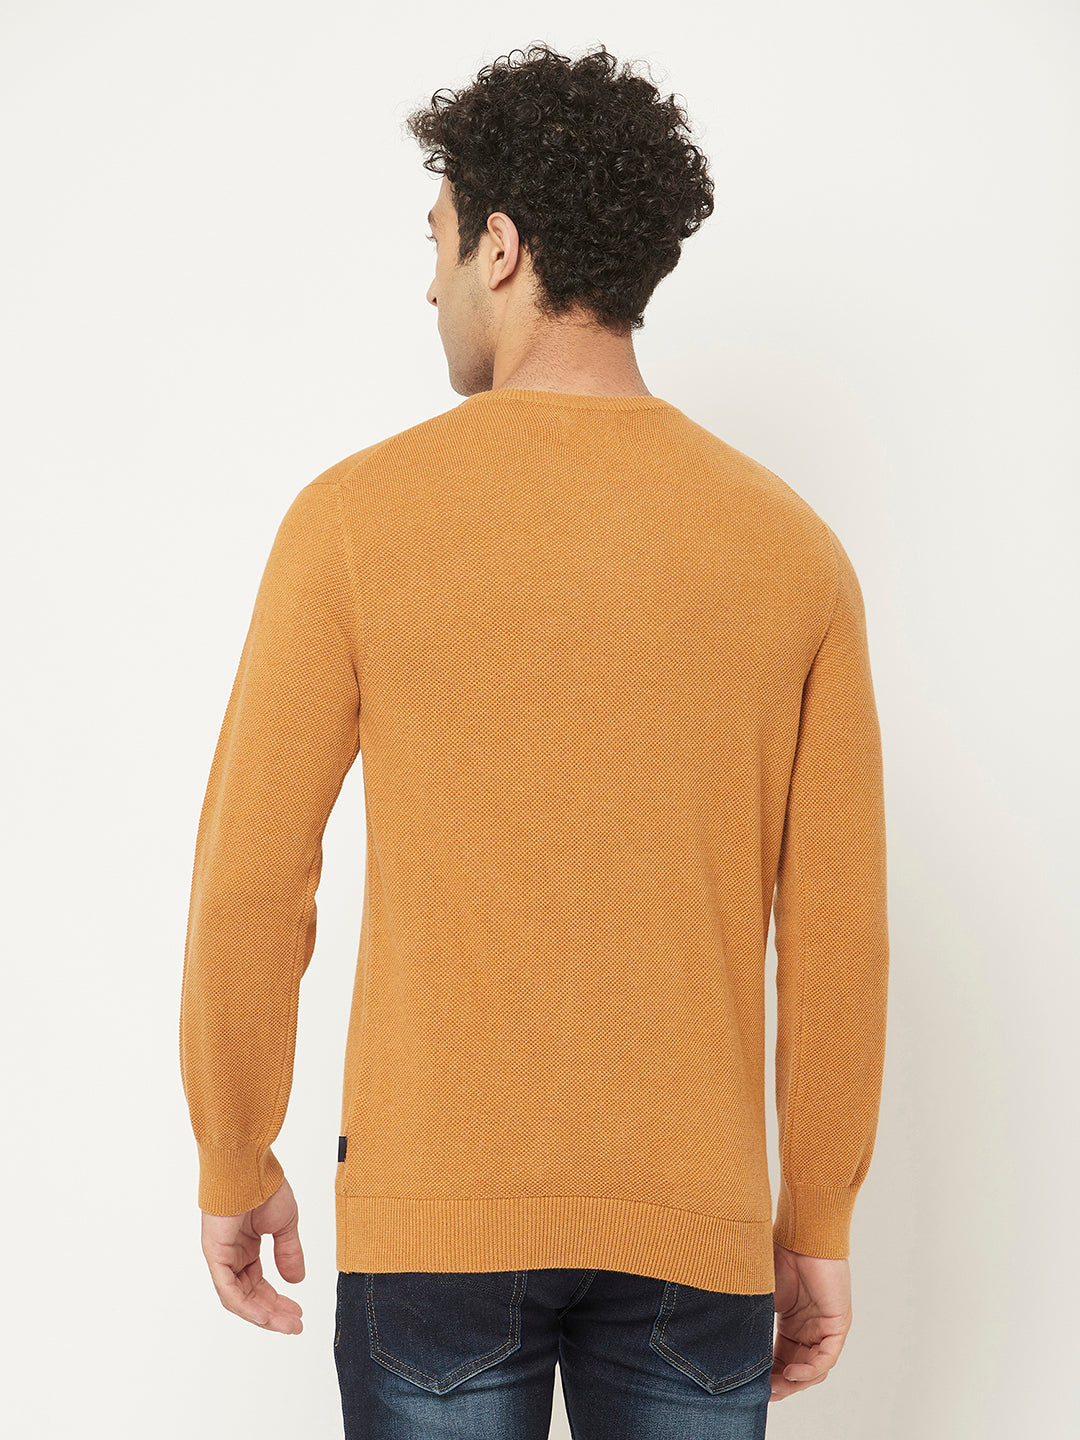 Orange Sweater Club in Crimsoune – Pure Cotton